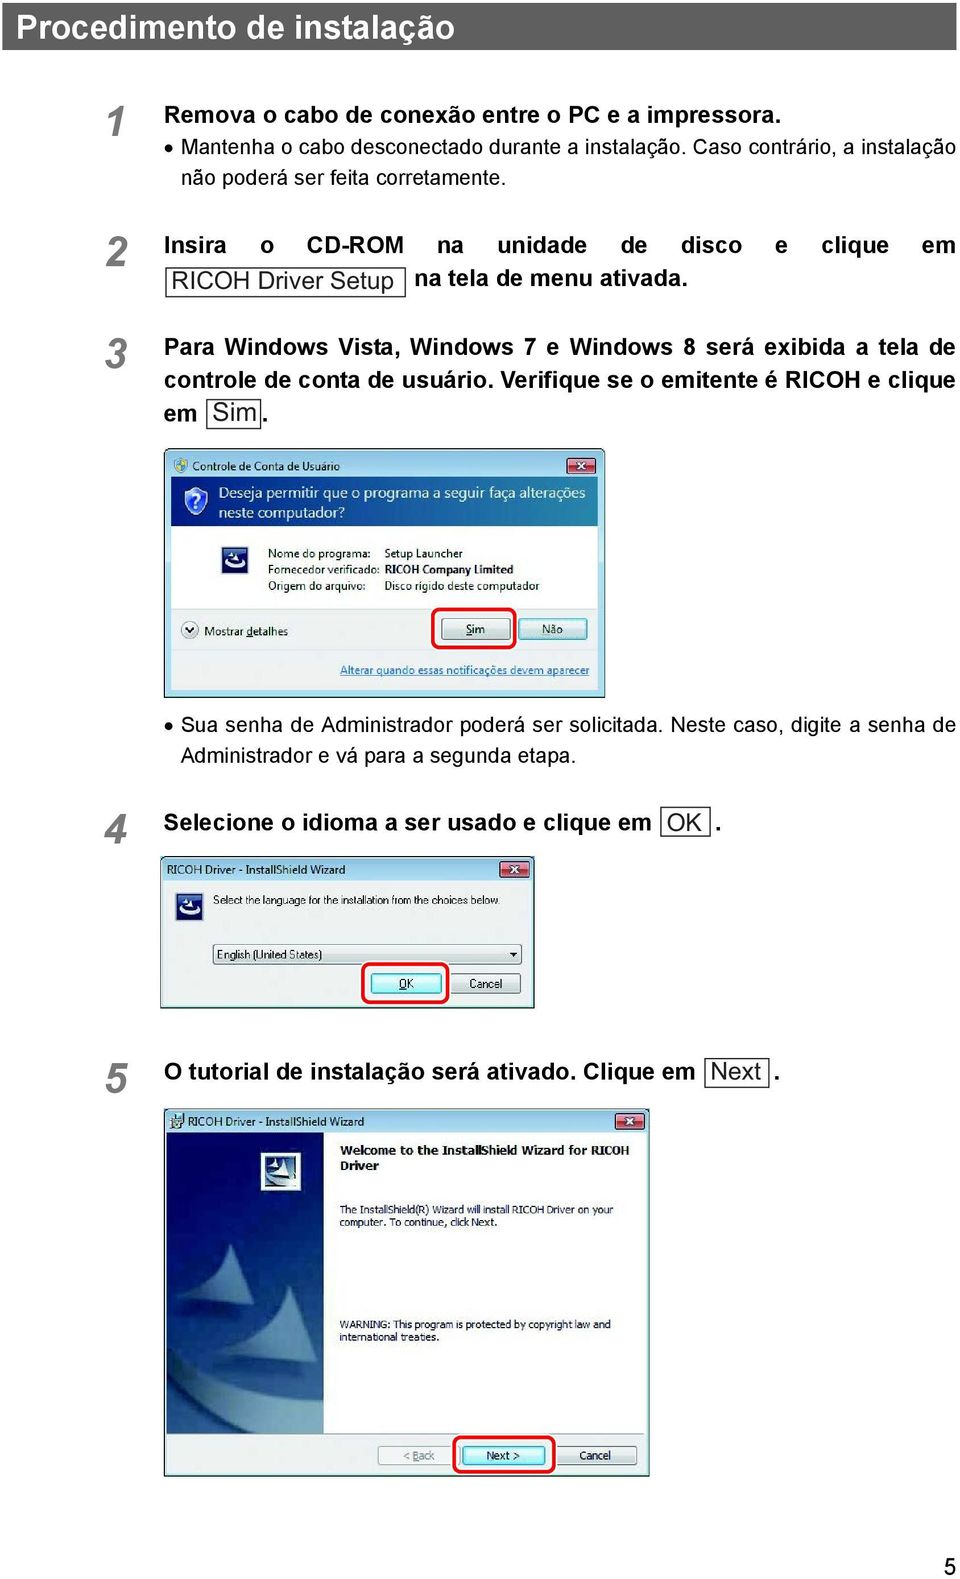 Para Windows Vista, Windows 7 e Windows 8 será exibida a tela de controle de conta de usuário. Verifique se o emitente é RICOH e clique em Sim.